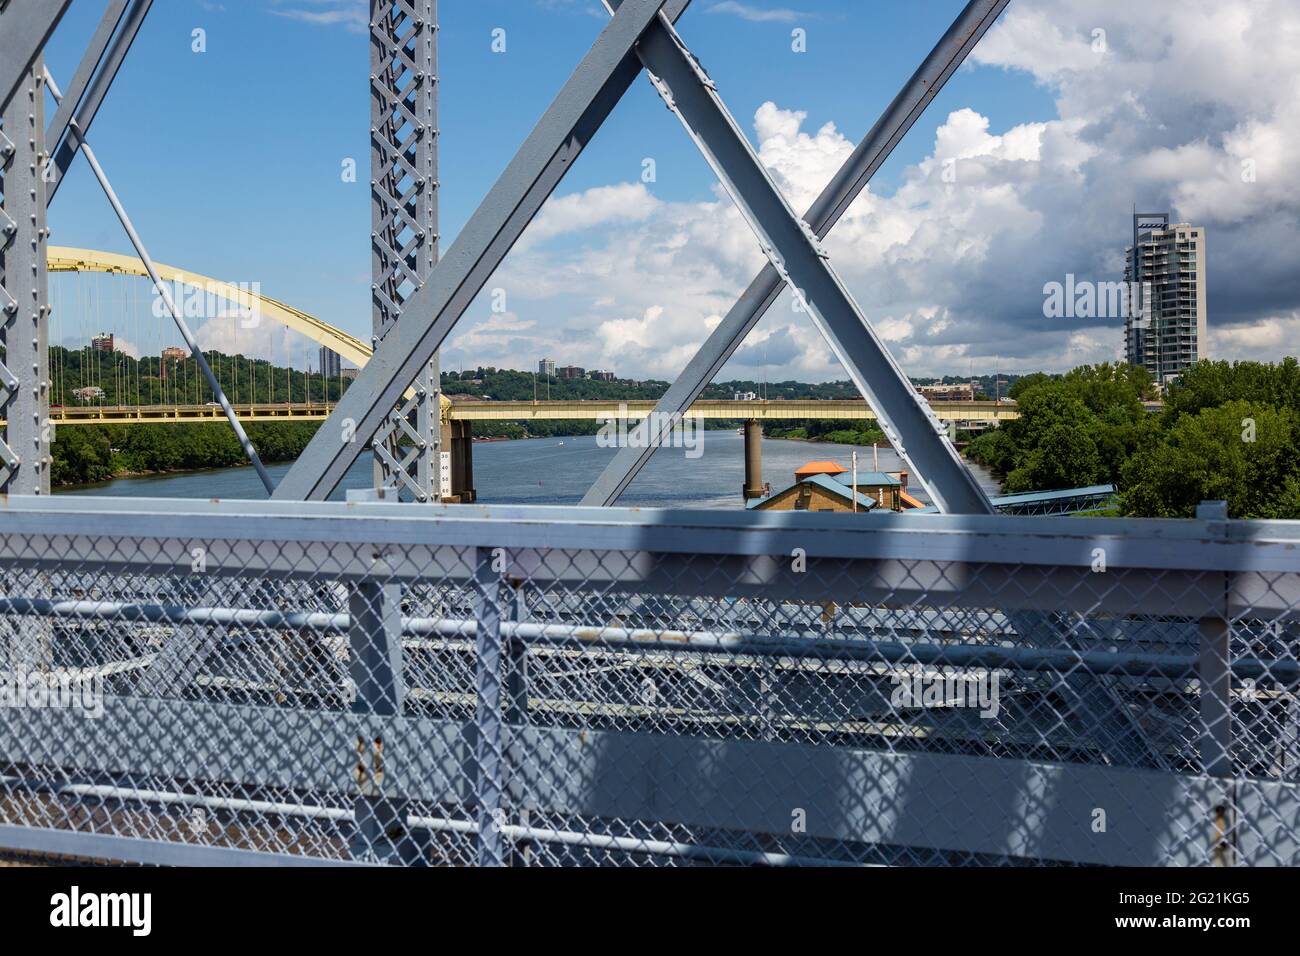 Le pont Daniel carter Beard et les appartements South Shore vus du pont Purple People Bridge au-dessus de l'Ohio River à Cincinnati, Ohio. Banque D'Images